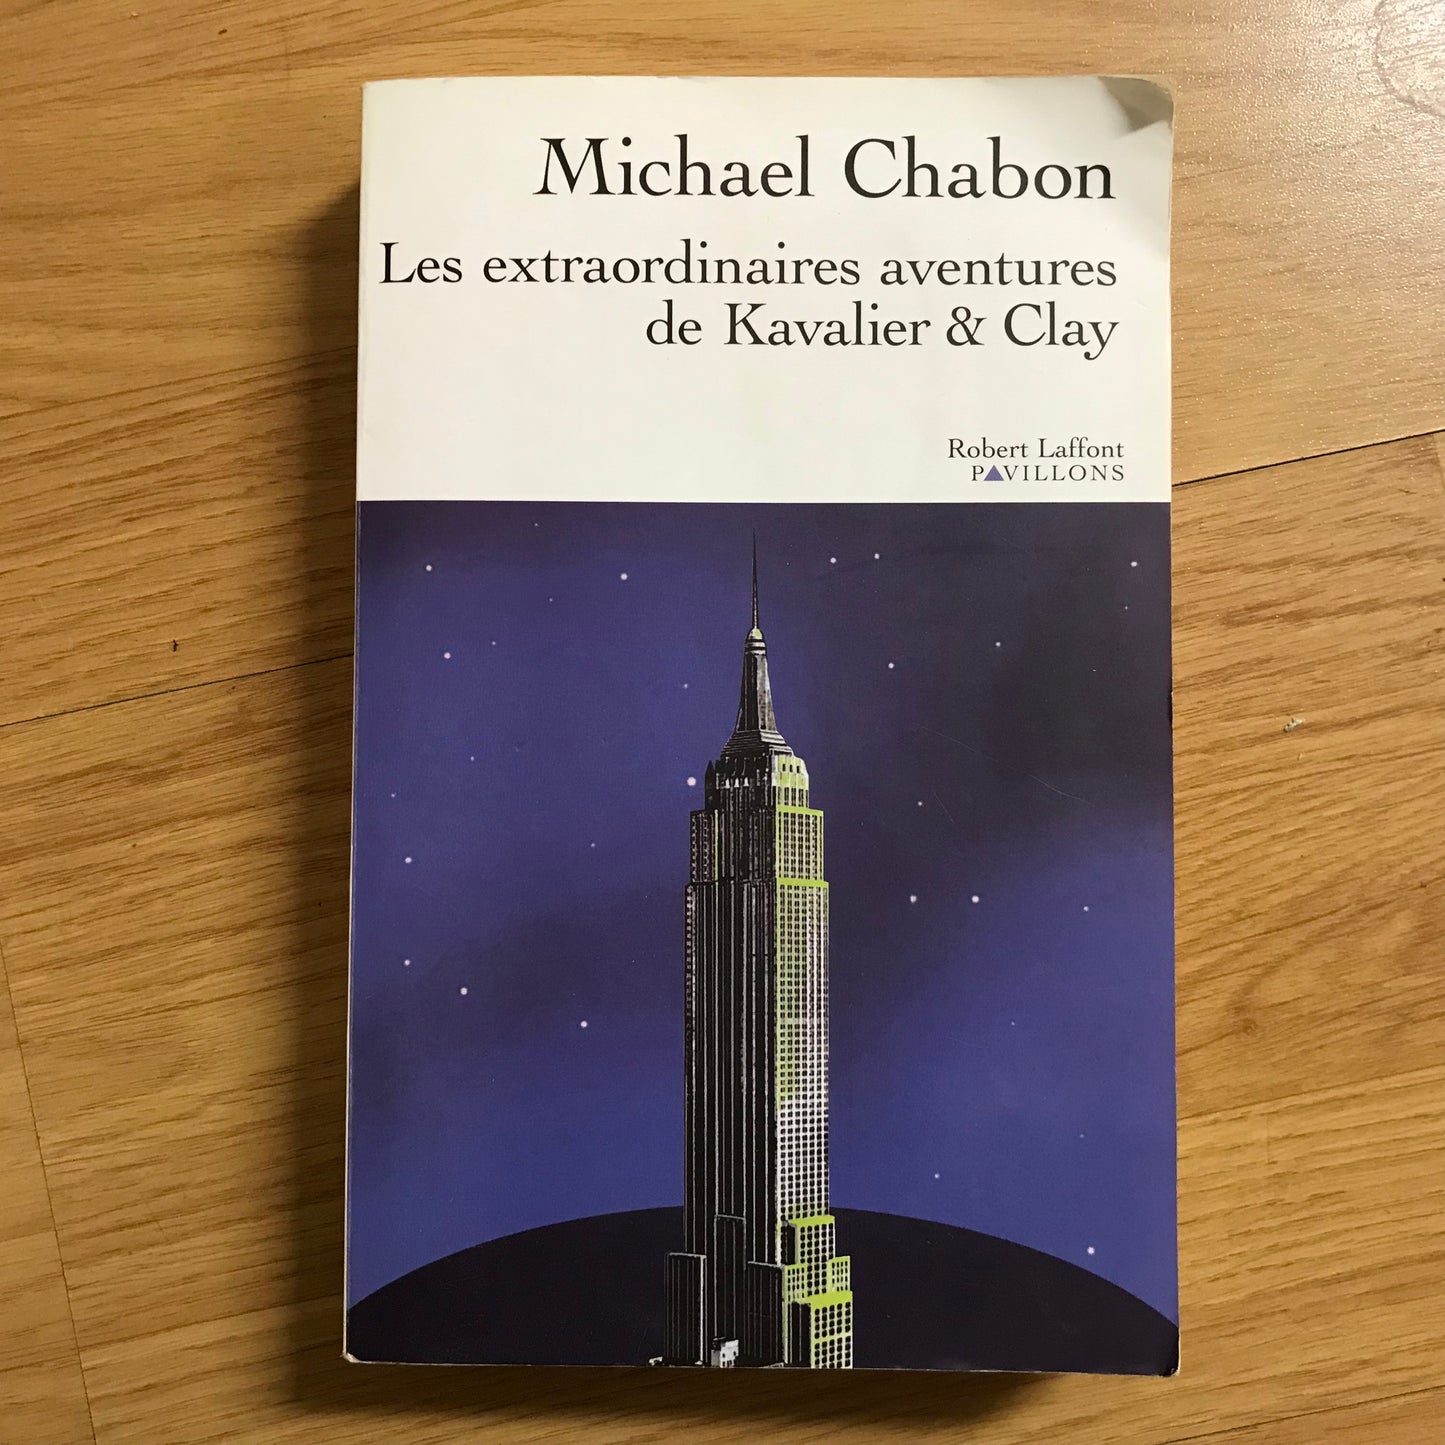 Chabon, Michael - Les extraordinaires aventures de Kavalier & Clay